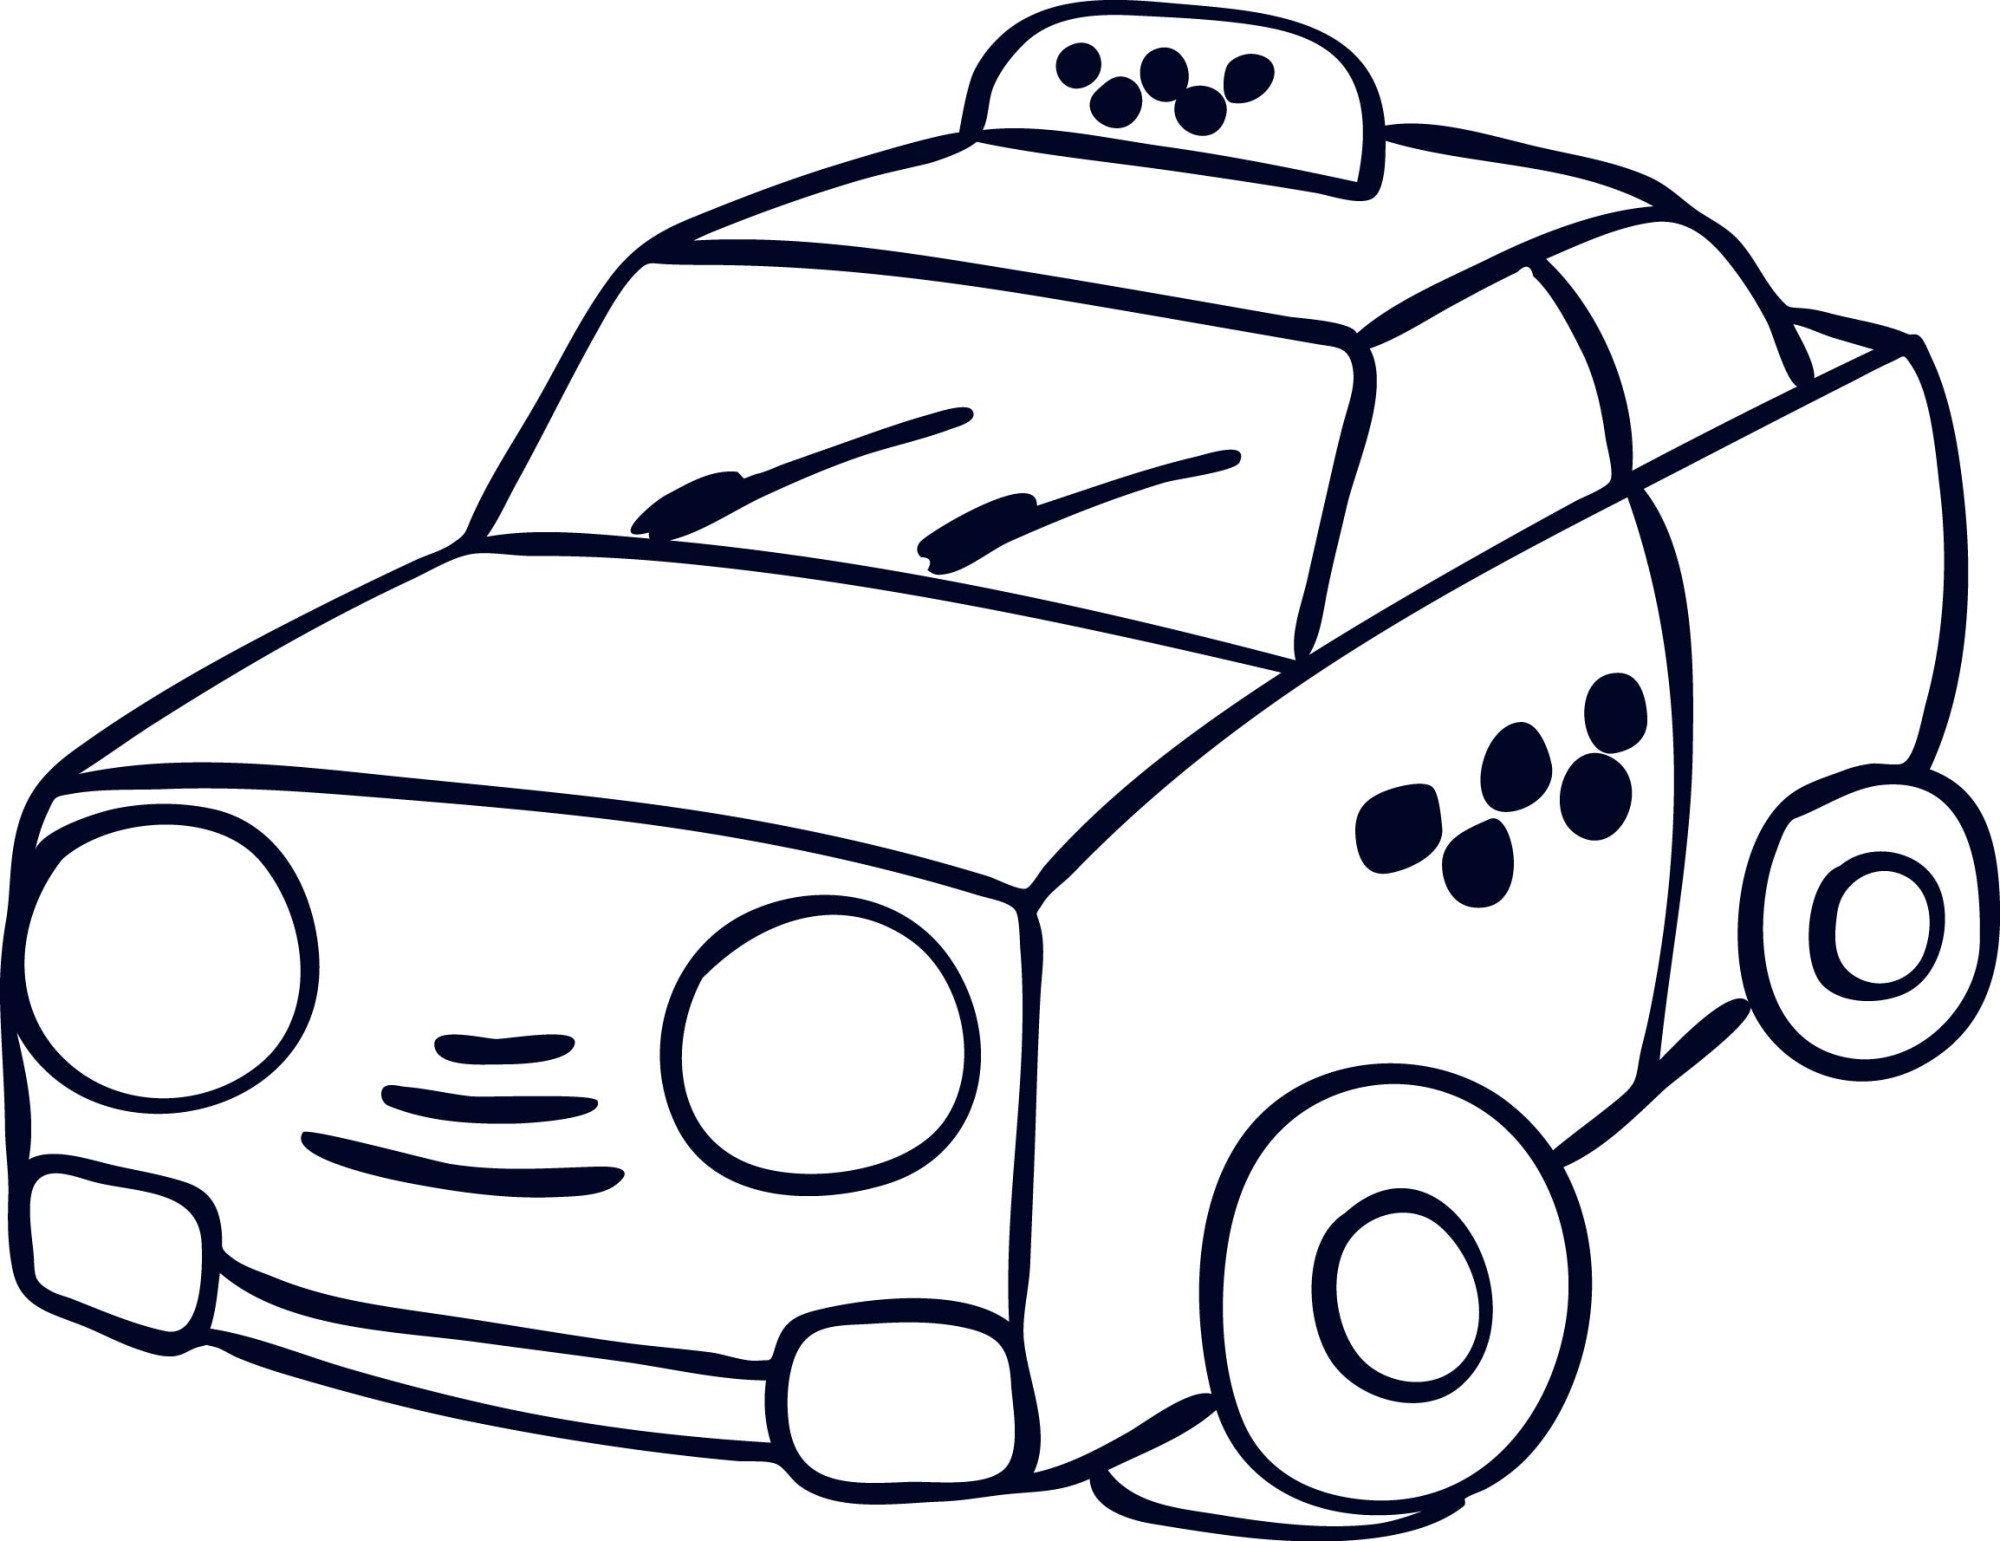 Раскраска для детей: игрушечная машинка такси